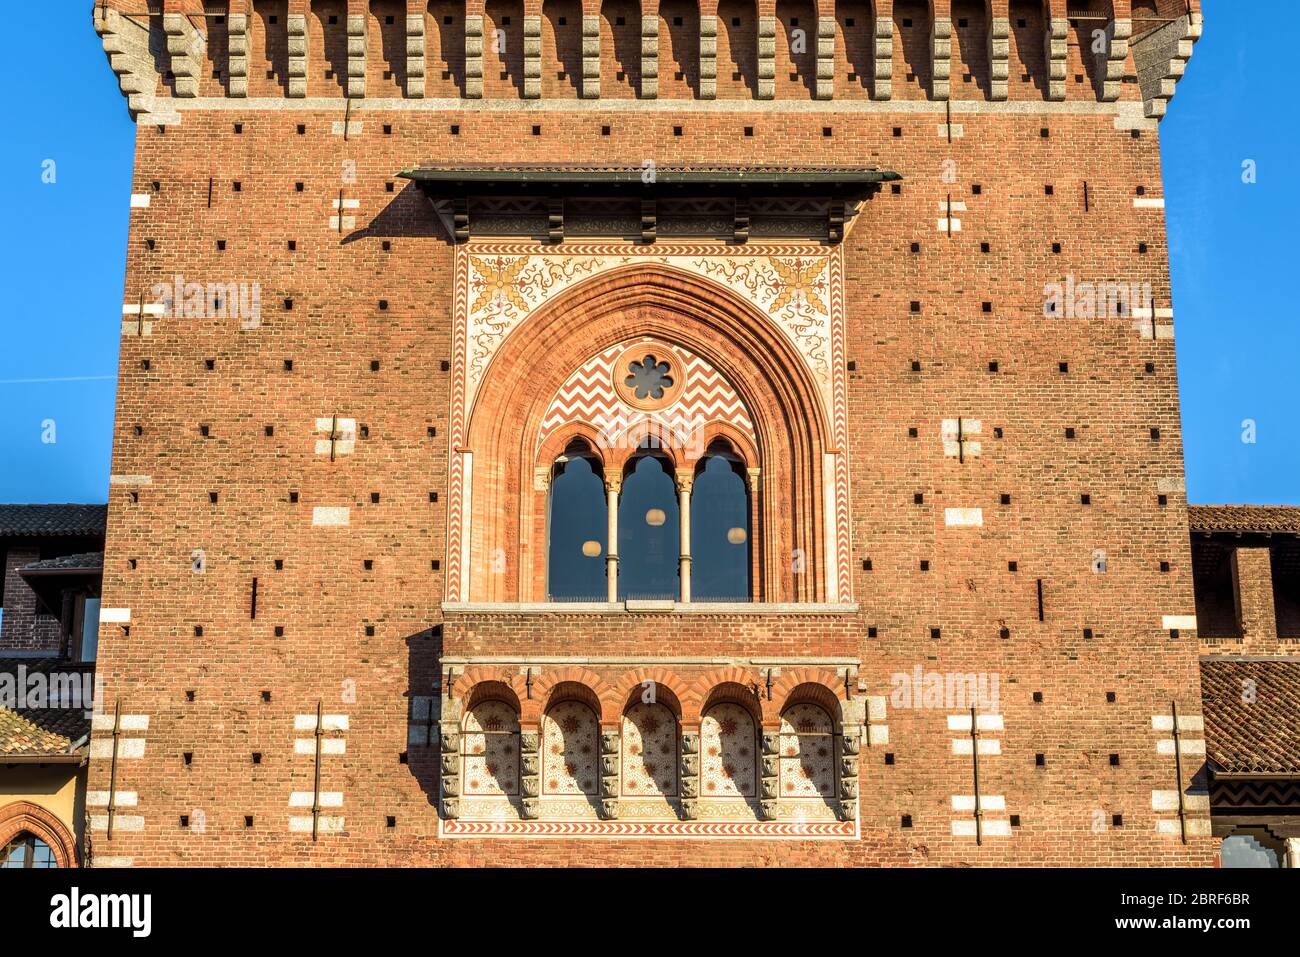 Primo piano del Castello Sforzesco, Milano, Italia. E' un famoso punto di riferimento della citta'. Particolare della torre principale (Torre del Filarete). Architettura antica nella Mila Foto Stock